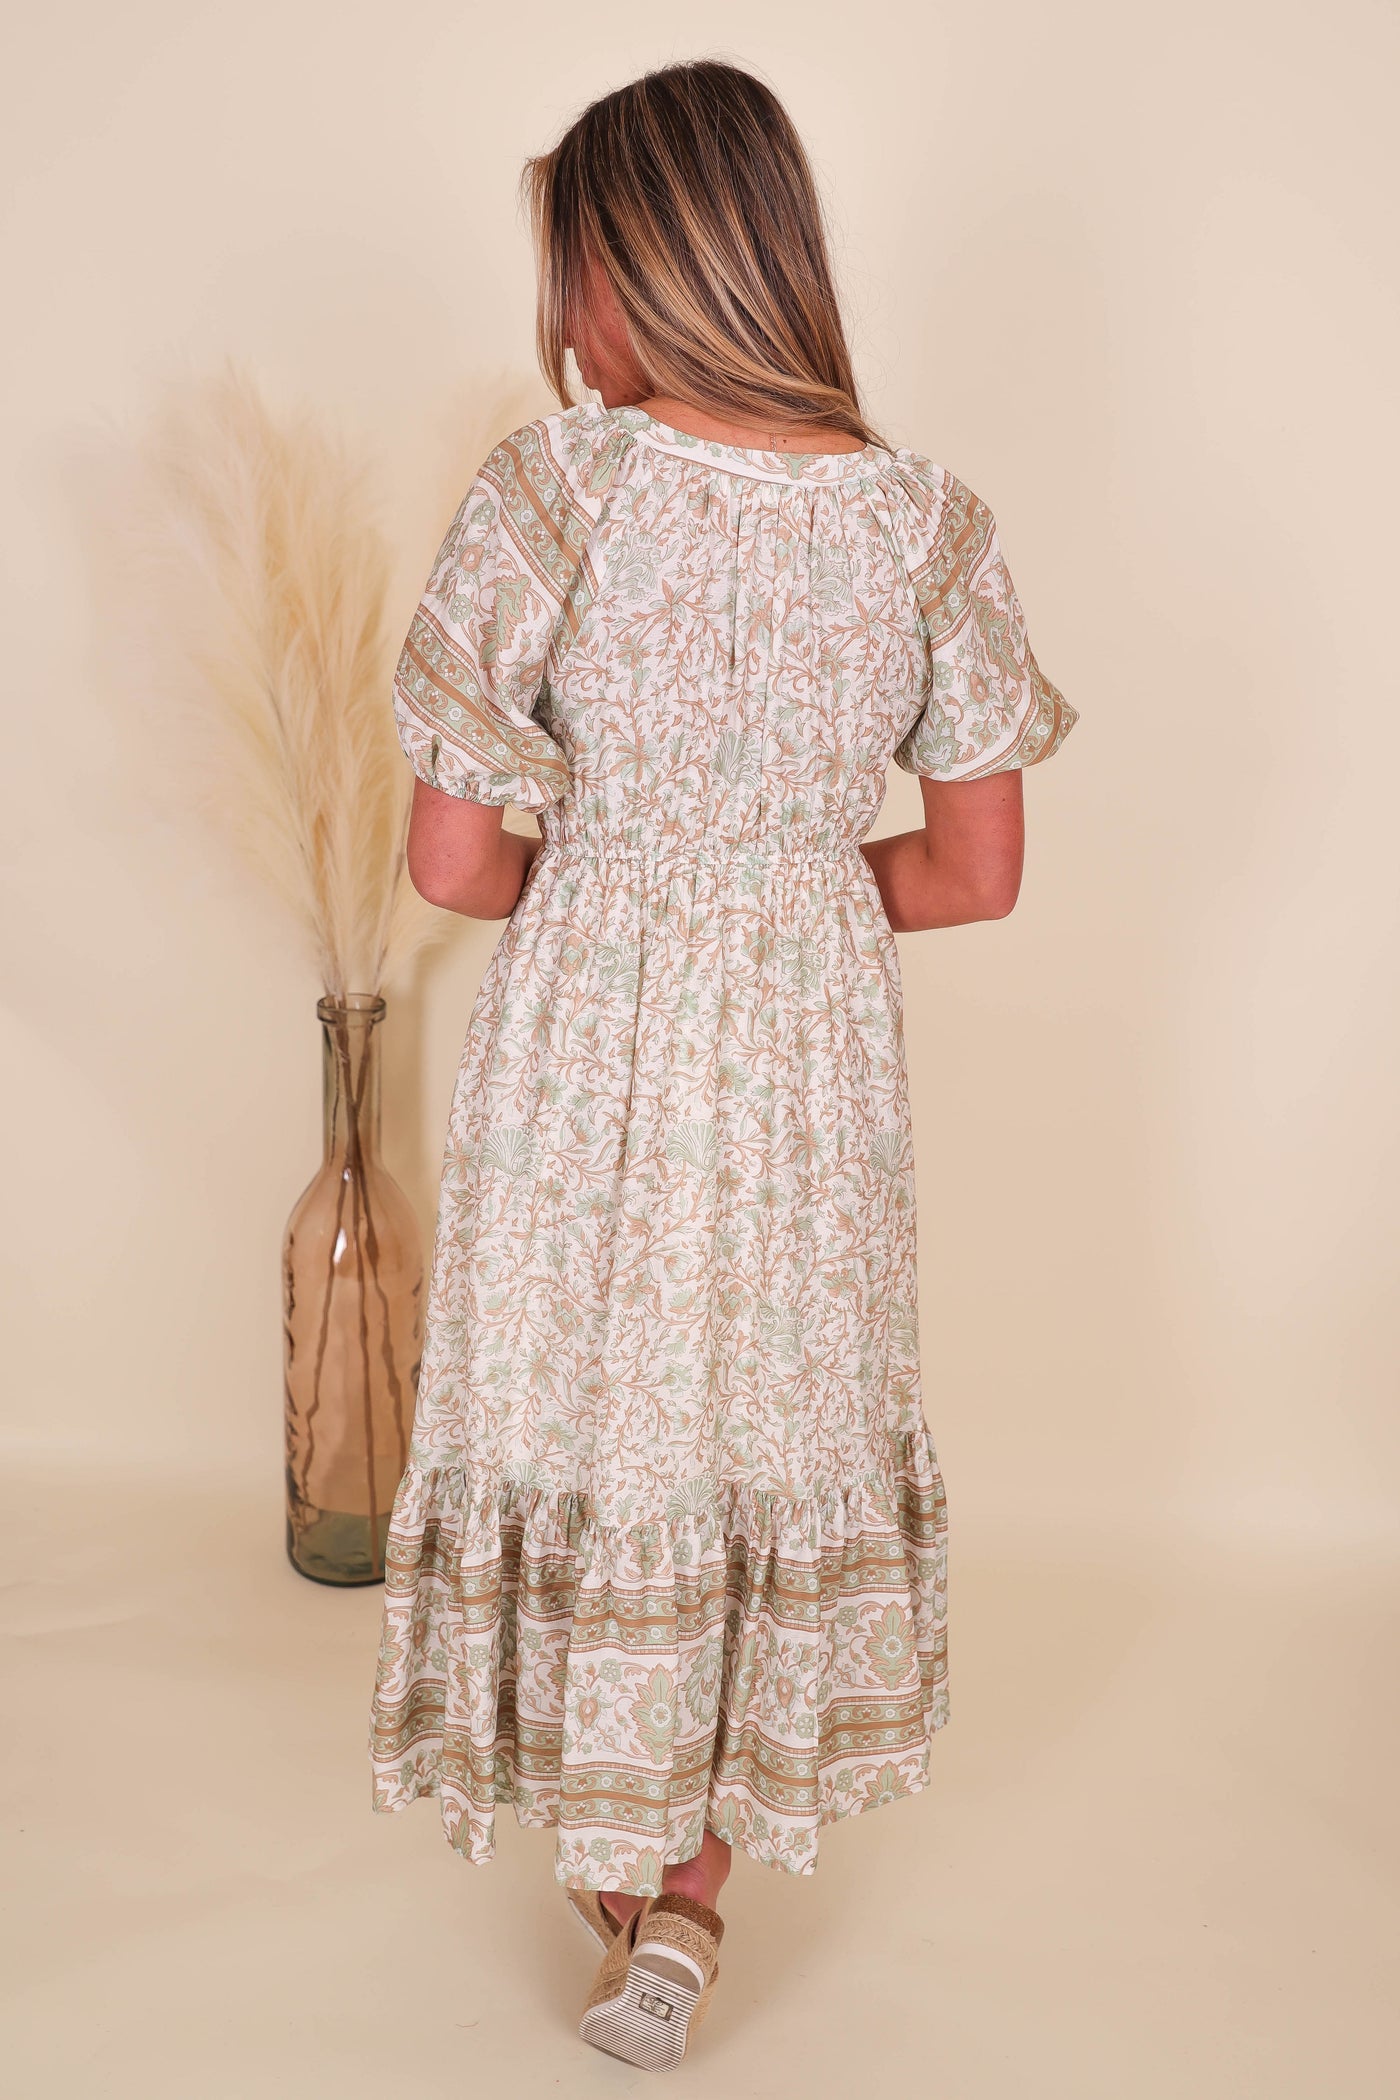 Pretty Midi Dress- Women's Conservative Midi Dress- Paisley Print Dress- Blu Pepper Midi Dress